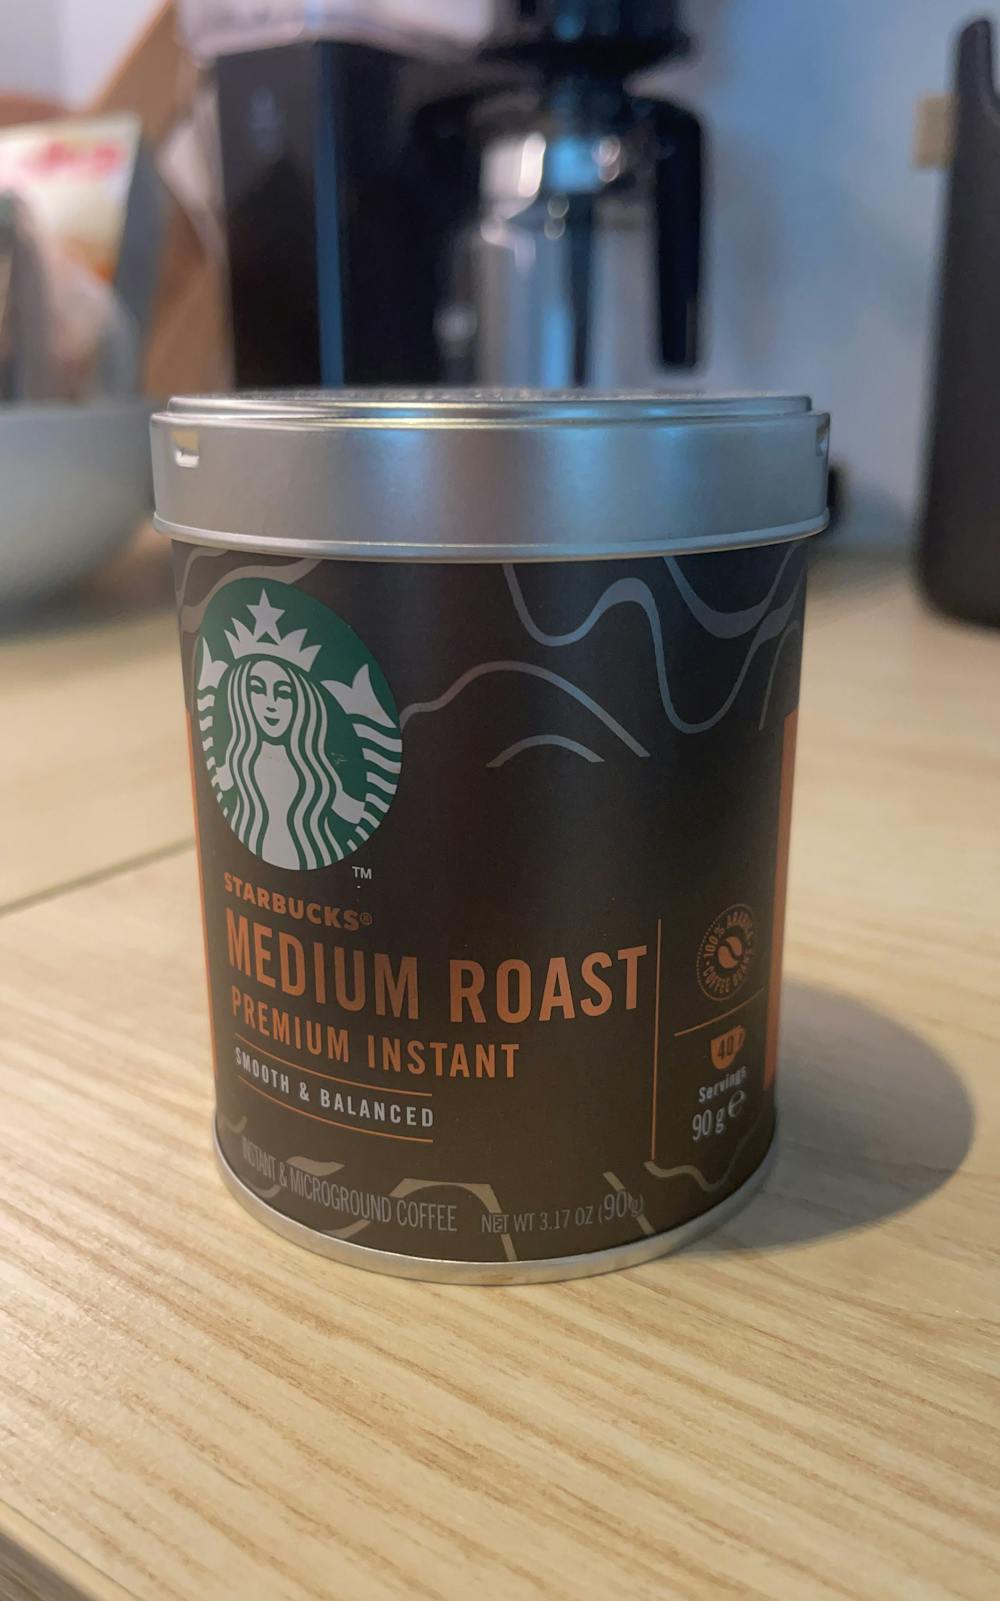 Medium roast premium instant , Starbucks